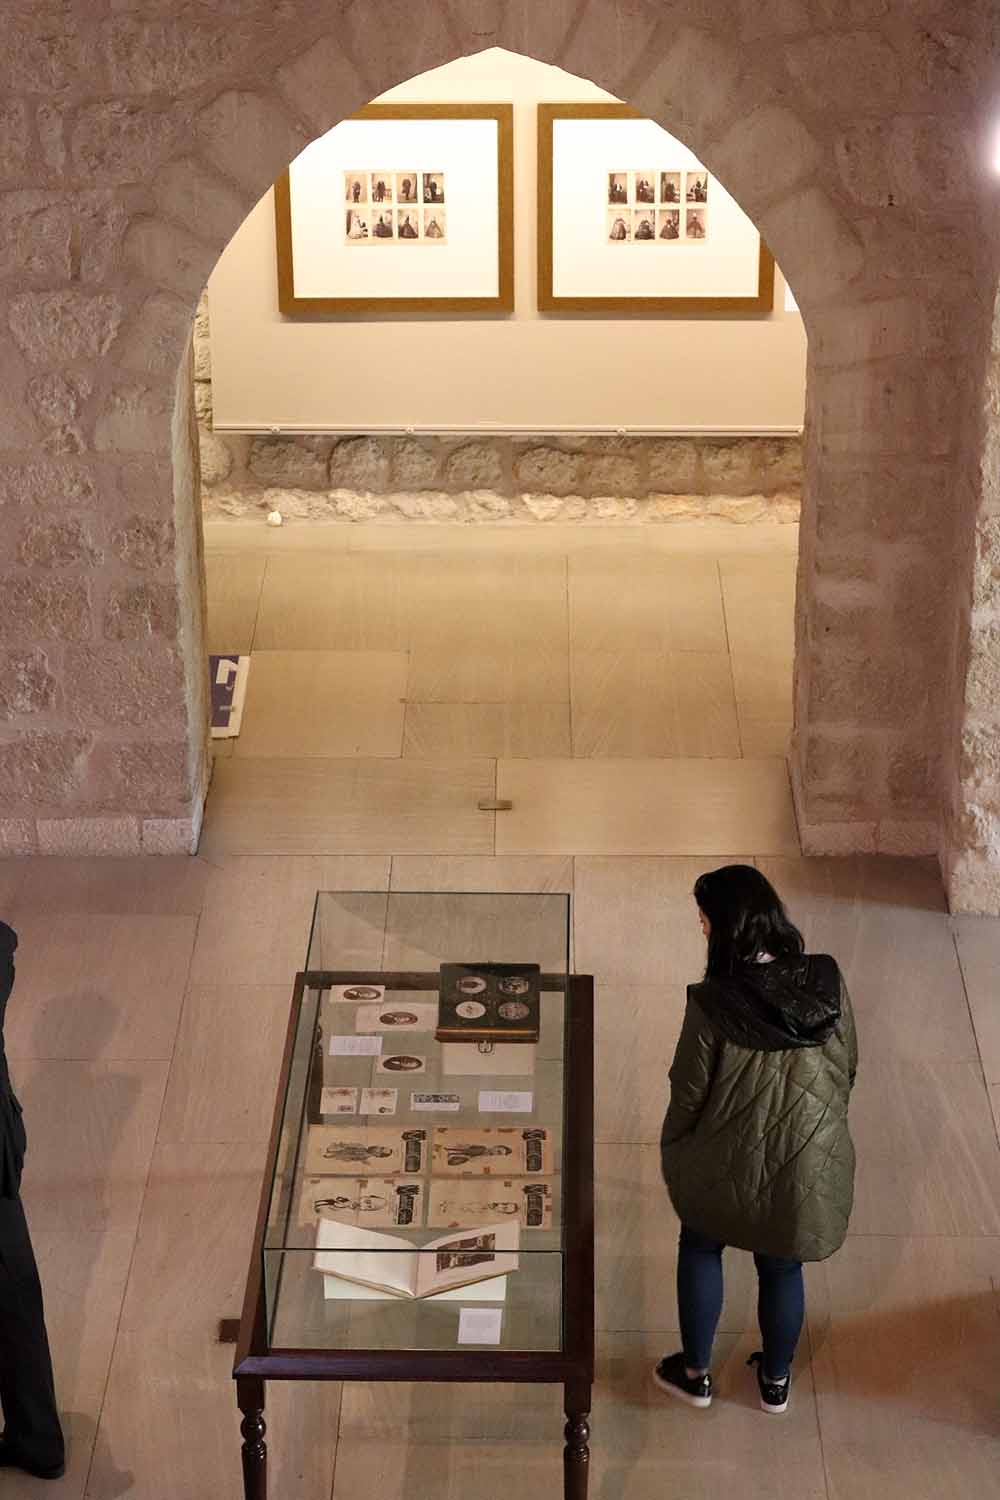 La sala de exposiciones del Arco de Santa María acoge la muestra 'El rostro de las letras'